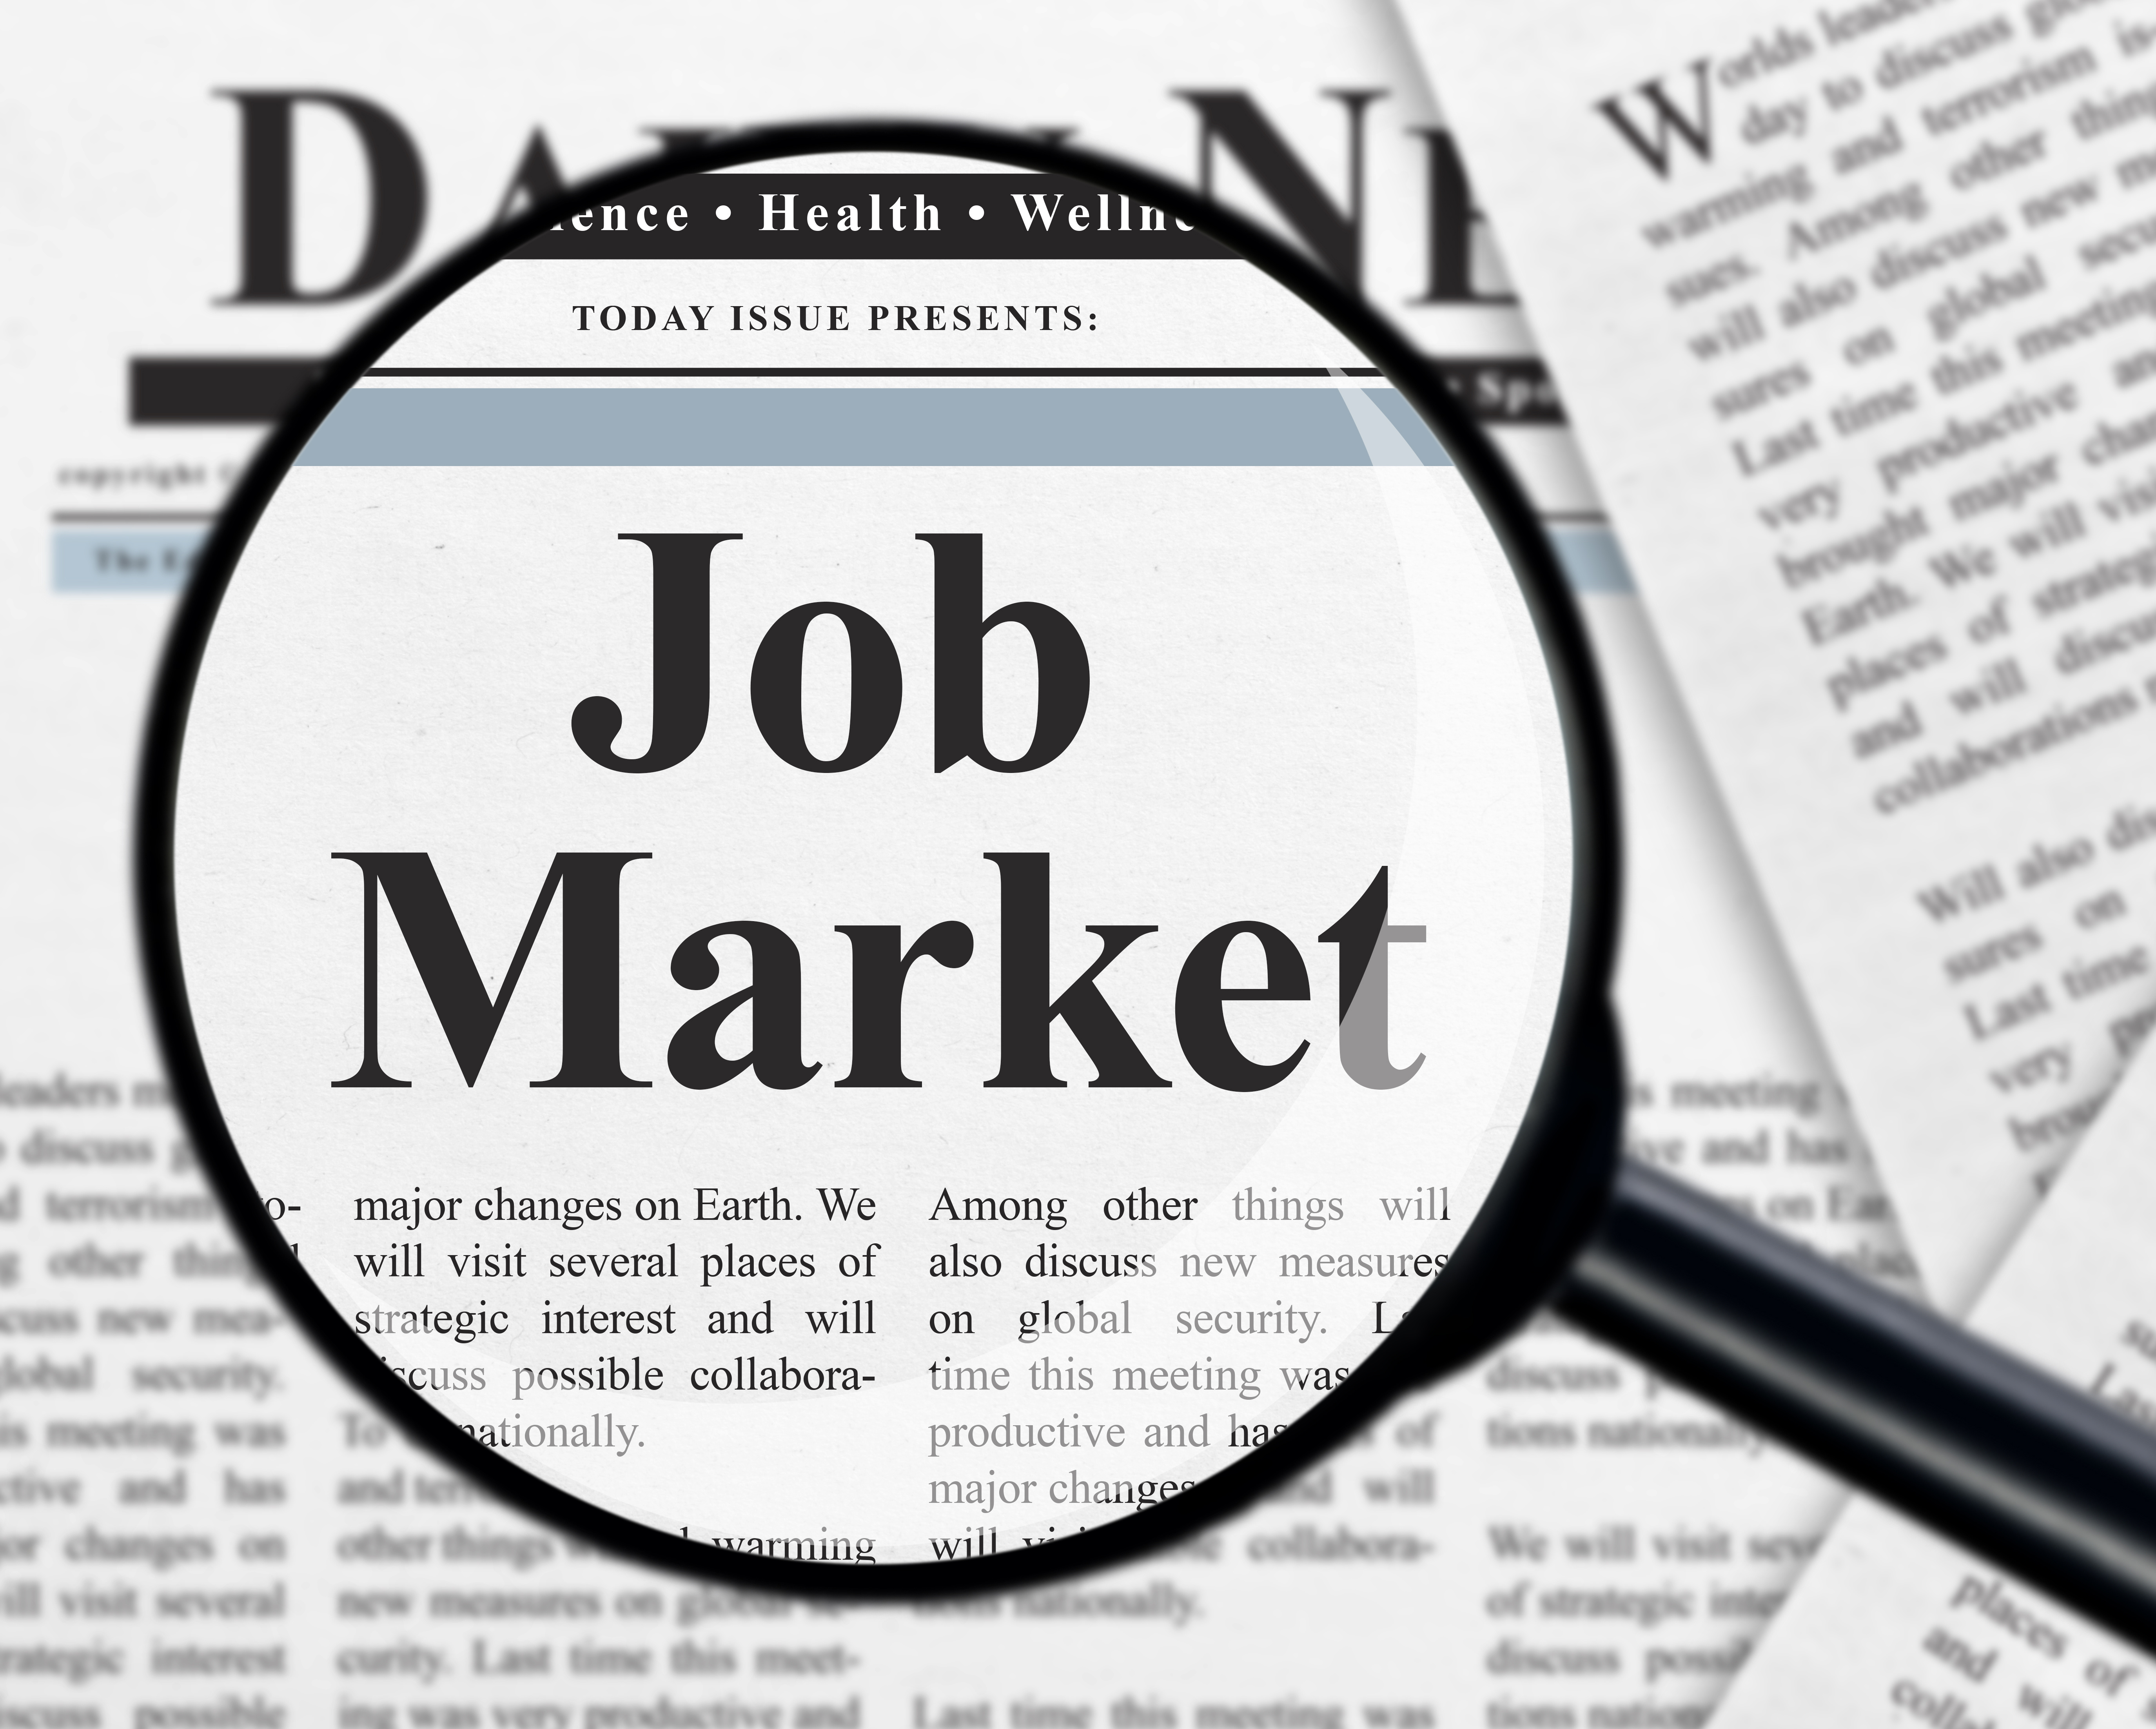 Job market